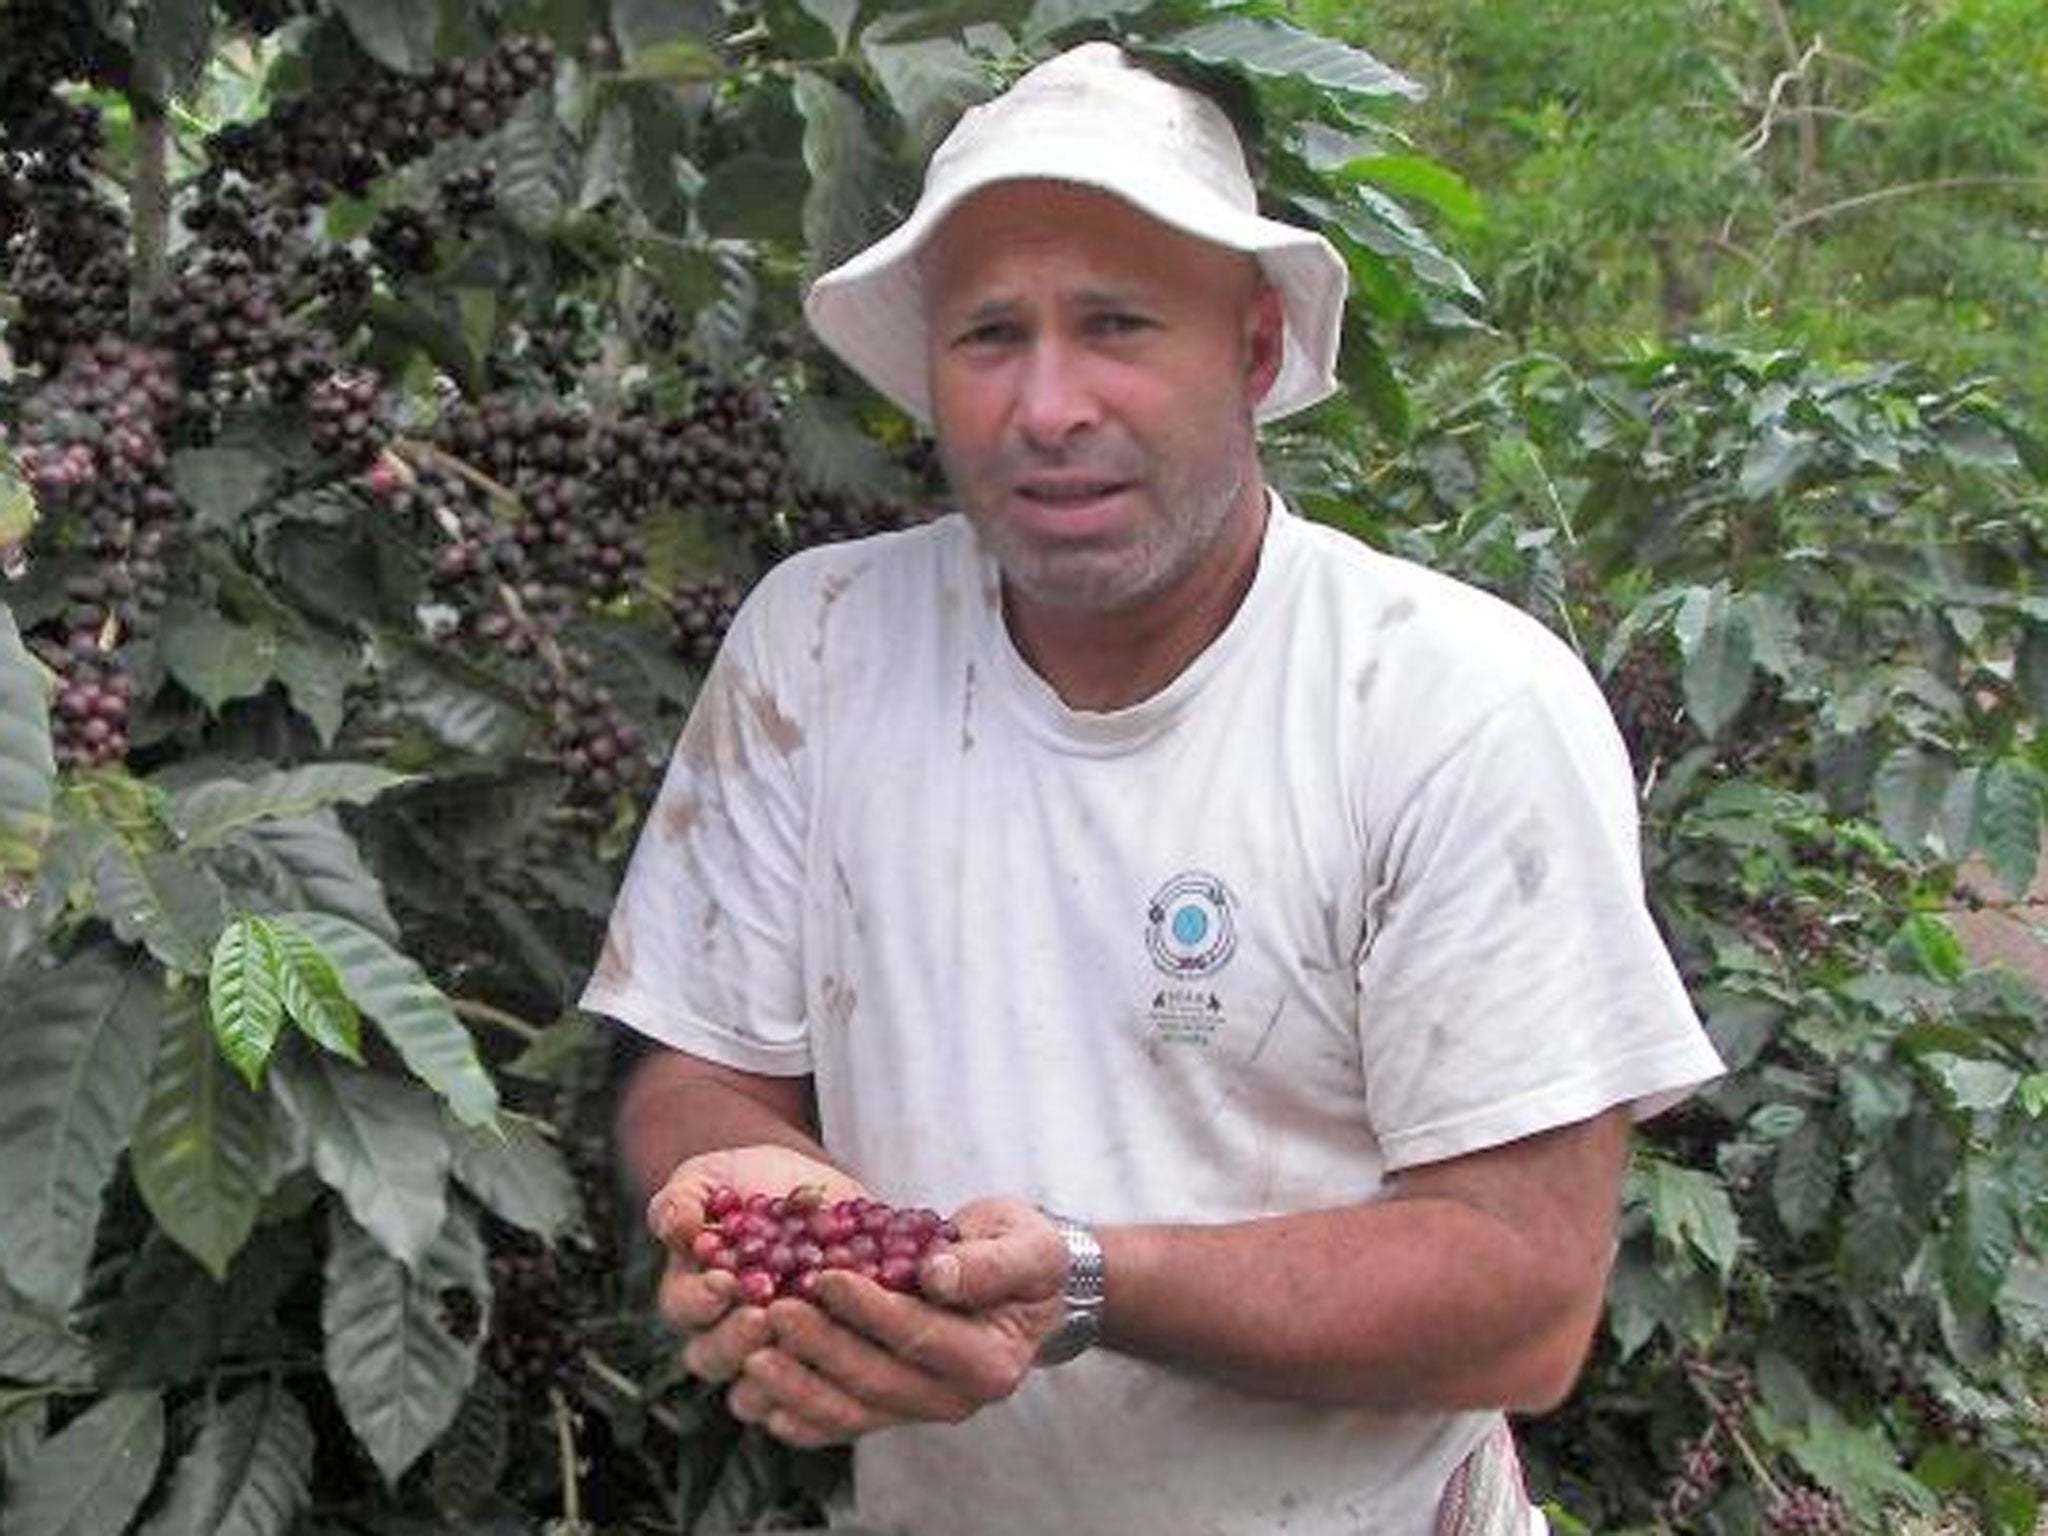 ‘Last year I got $2.20 per pound, this year $1.40’ Gerardo Arias Camacho, 43, a coffee farmer from Costa Rica